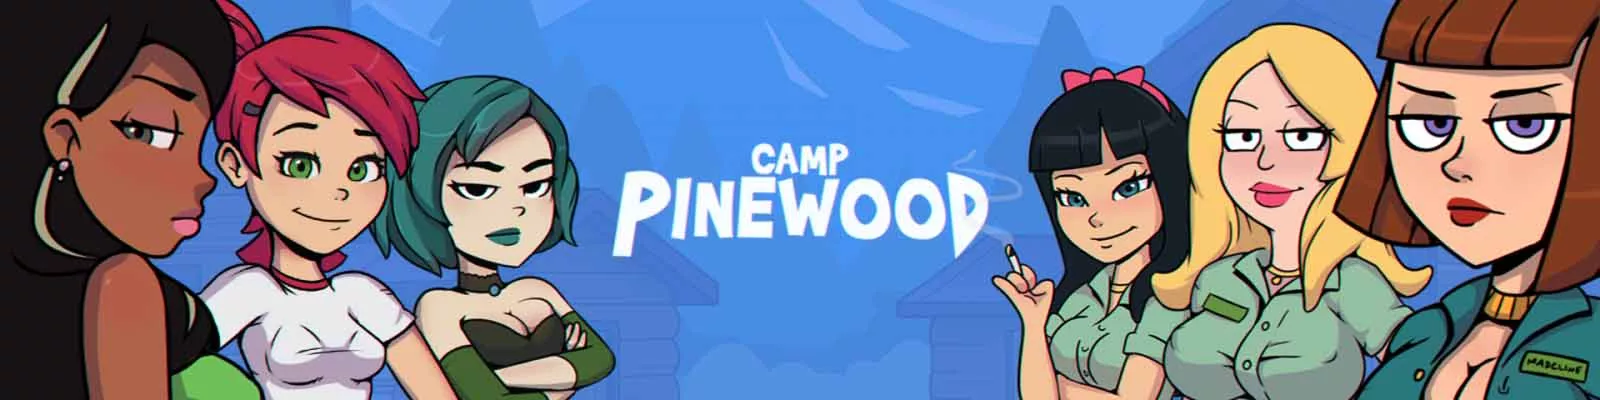 Kamp Pinewood volwassen spel